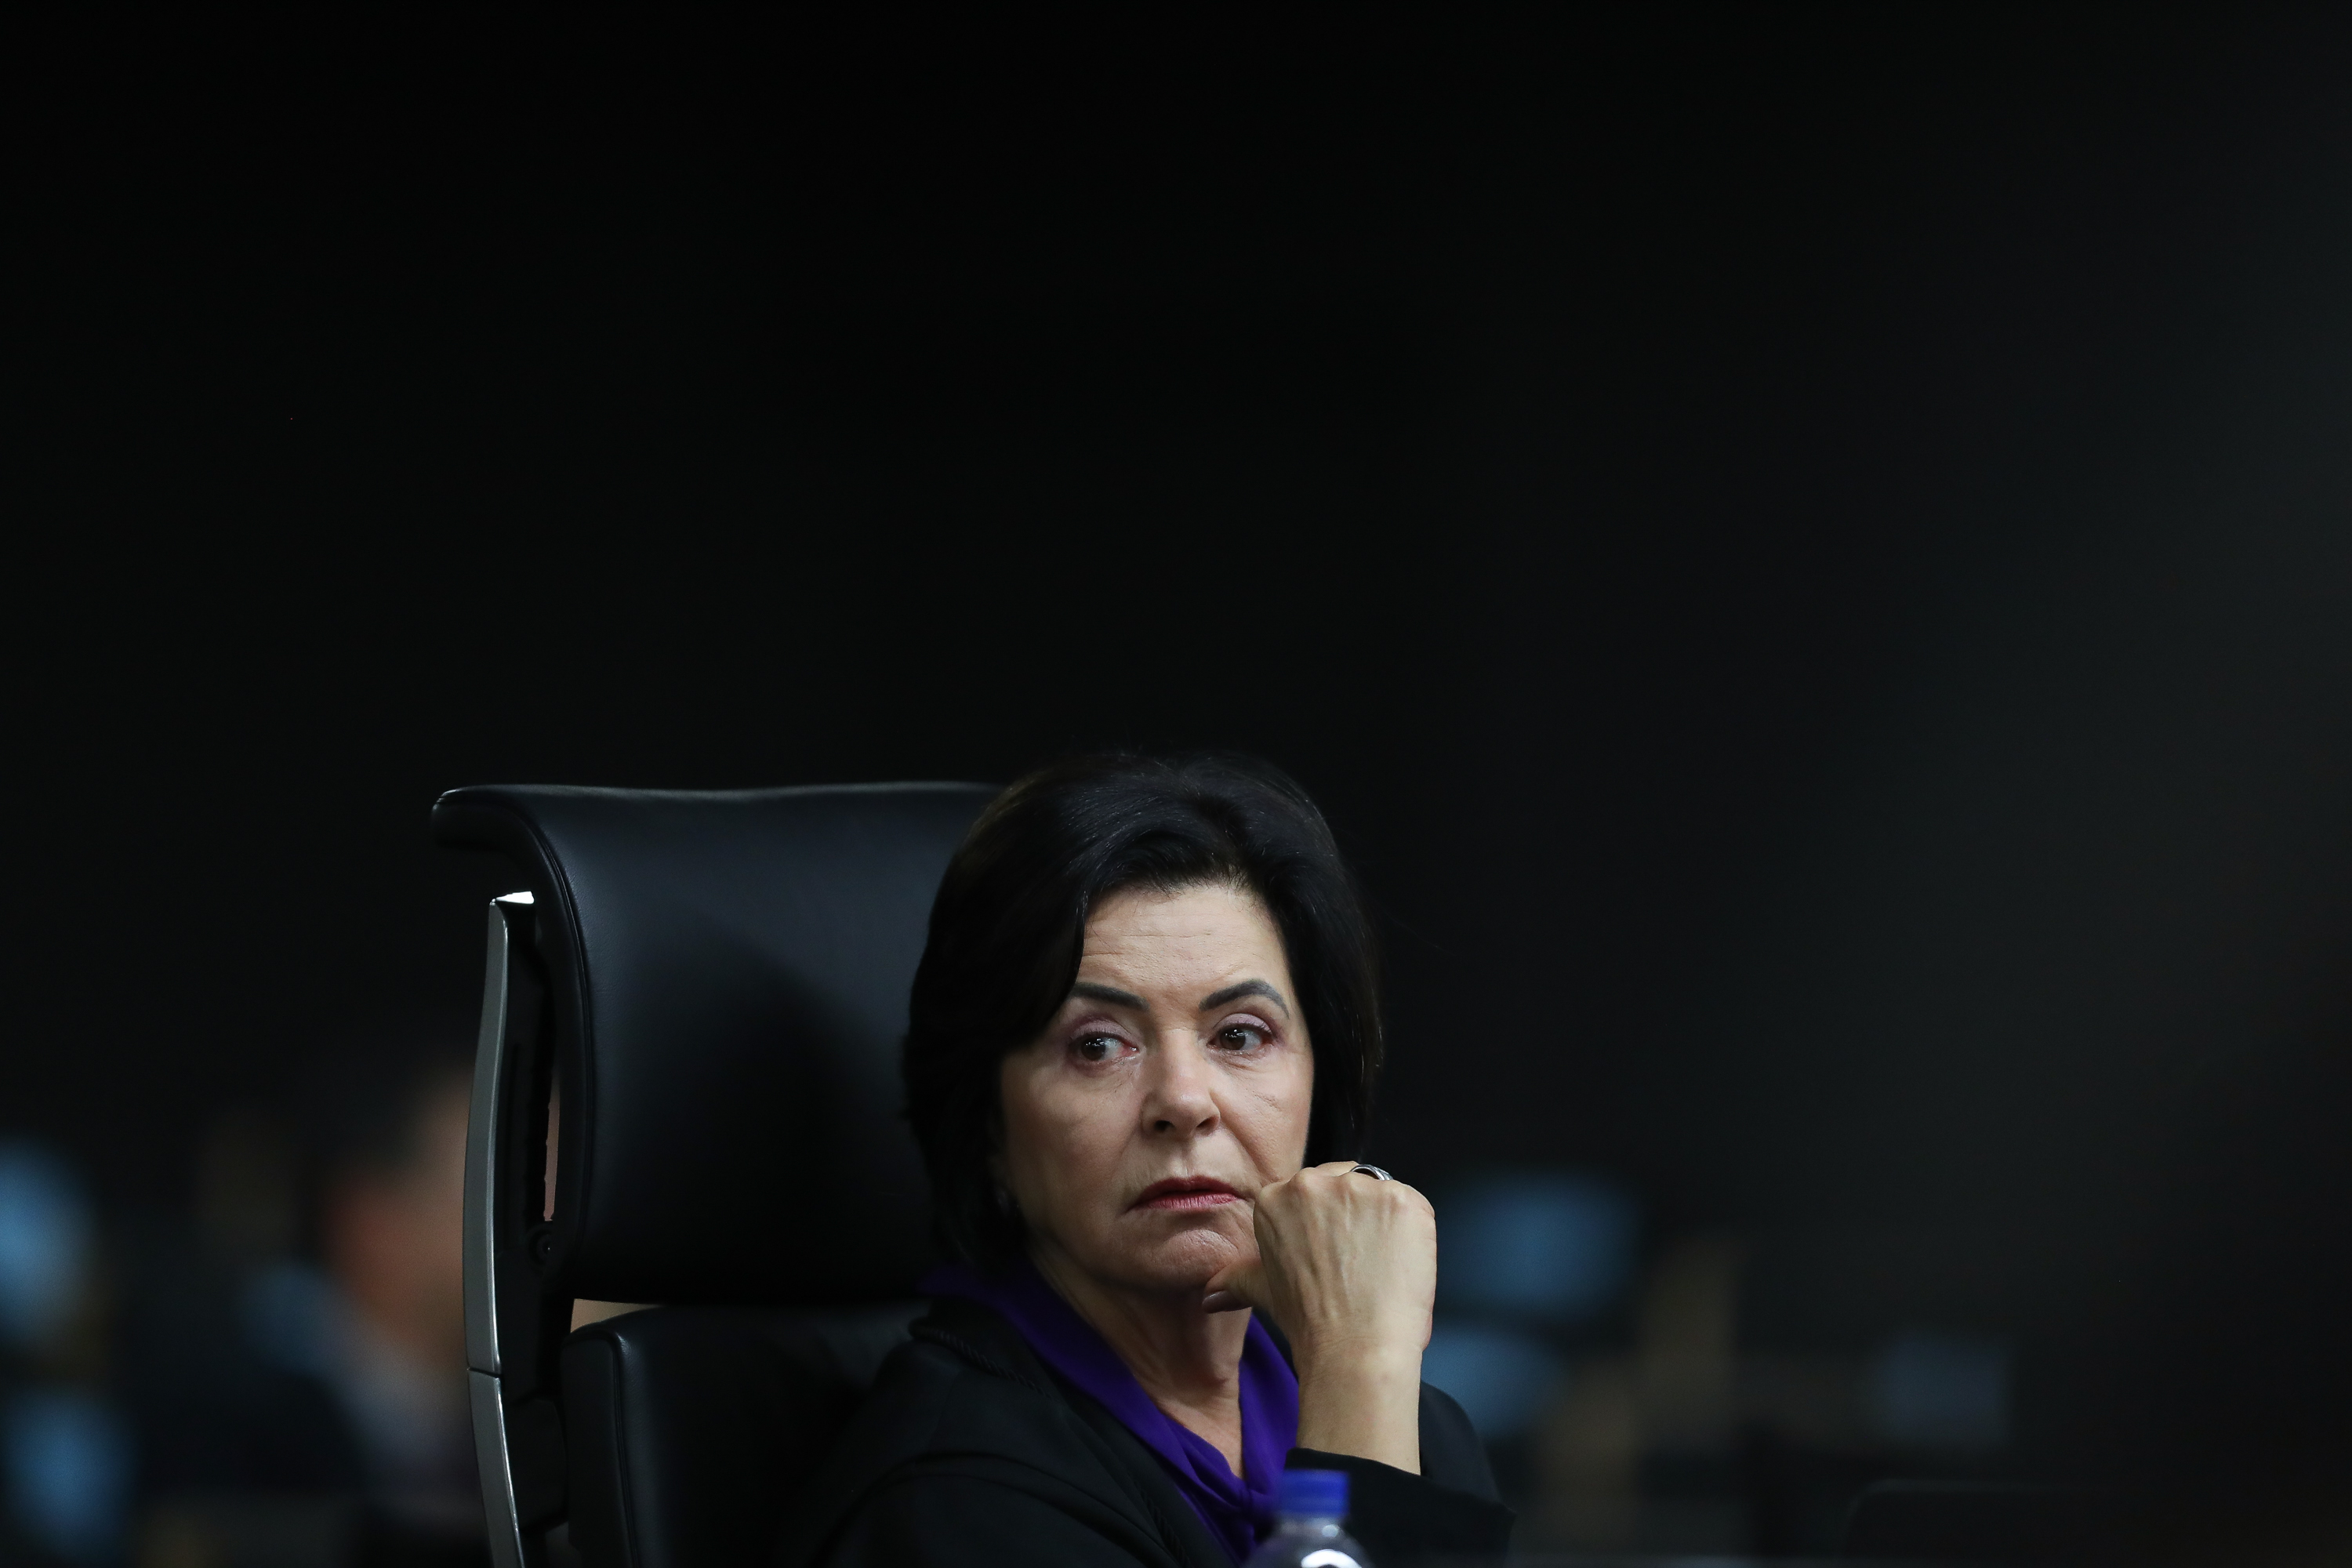 Ministra Ana Arraes